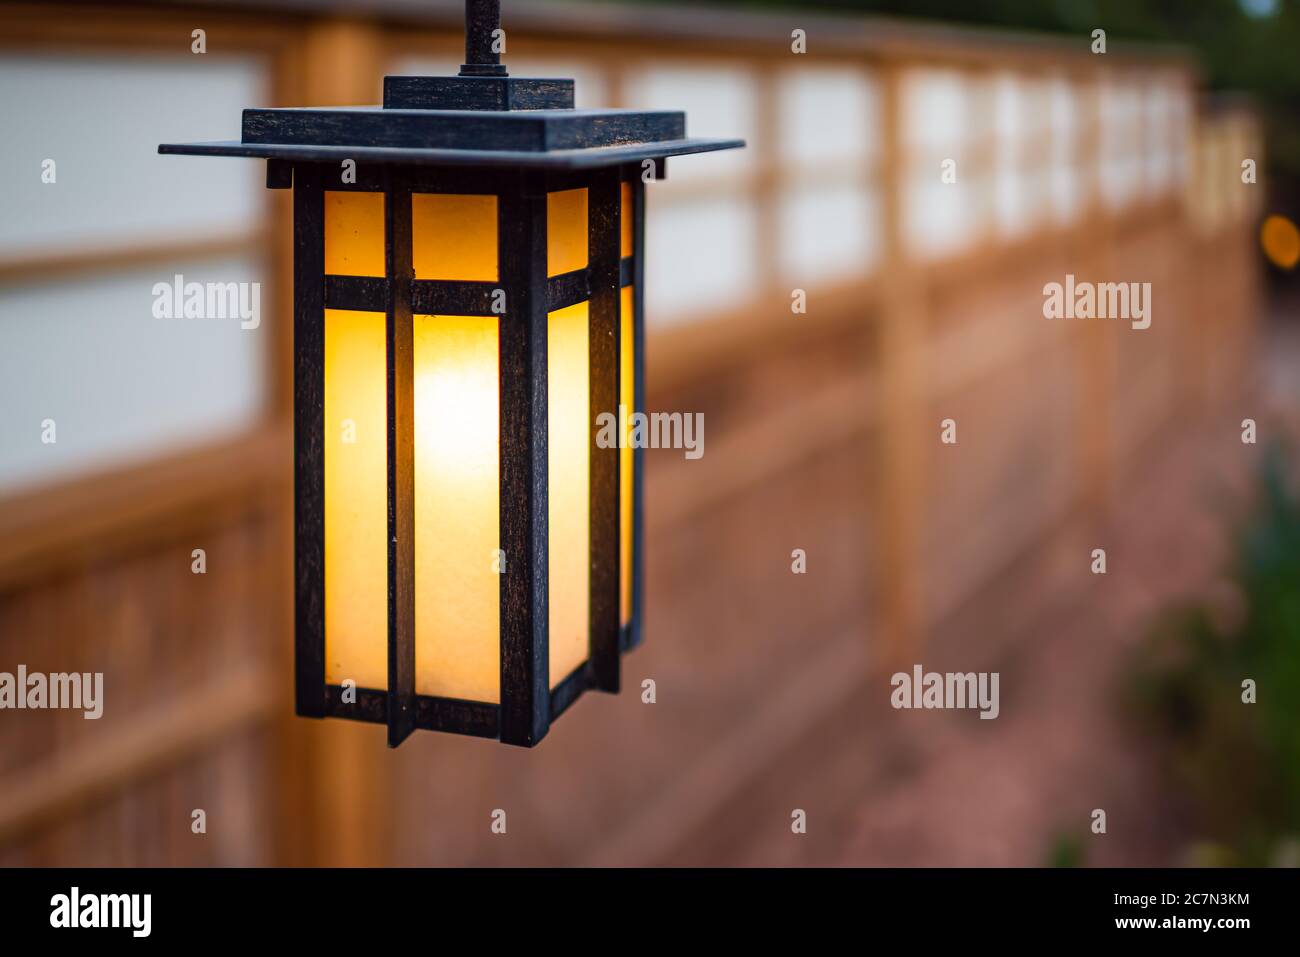 Japan hängende Laterne Lampe im japanischen Garten mit Haus Tempel Wand  verschwommen Bokeh Hintergrund und beleuchtet Licht in der Nacht  Stockfotografie - Alamy